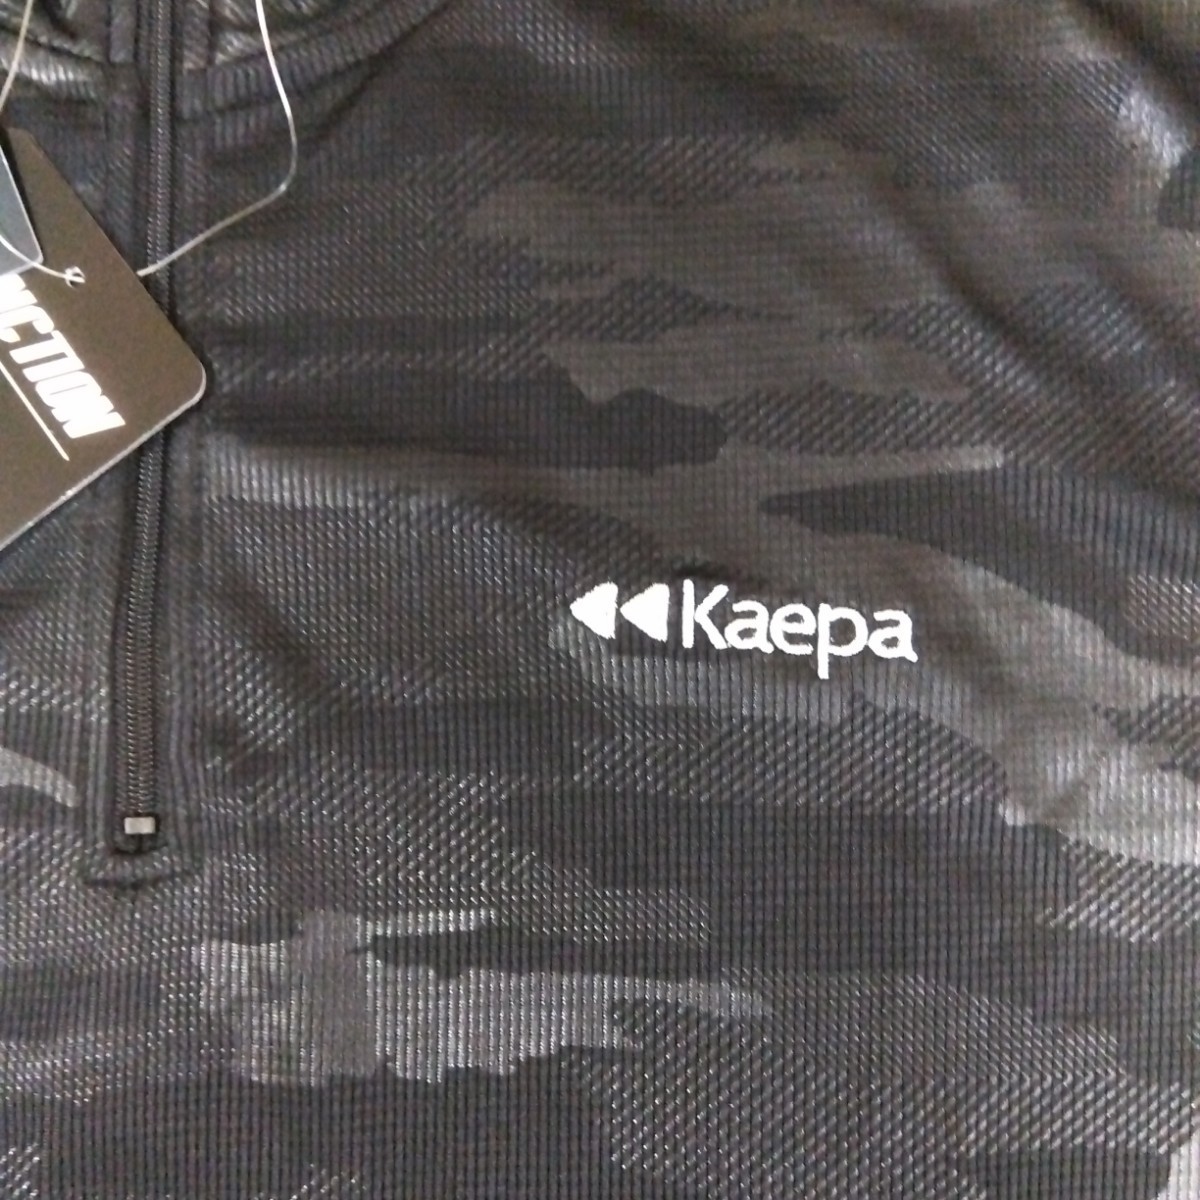 M ③Kaepa ケイパ 新品 半袖ポロシャツ 襟付きトップス ハーフジップ 黒 メンズ紳士 アウトドア スポーツ ゴルフウェア ドライ UV対策 golf